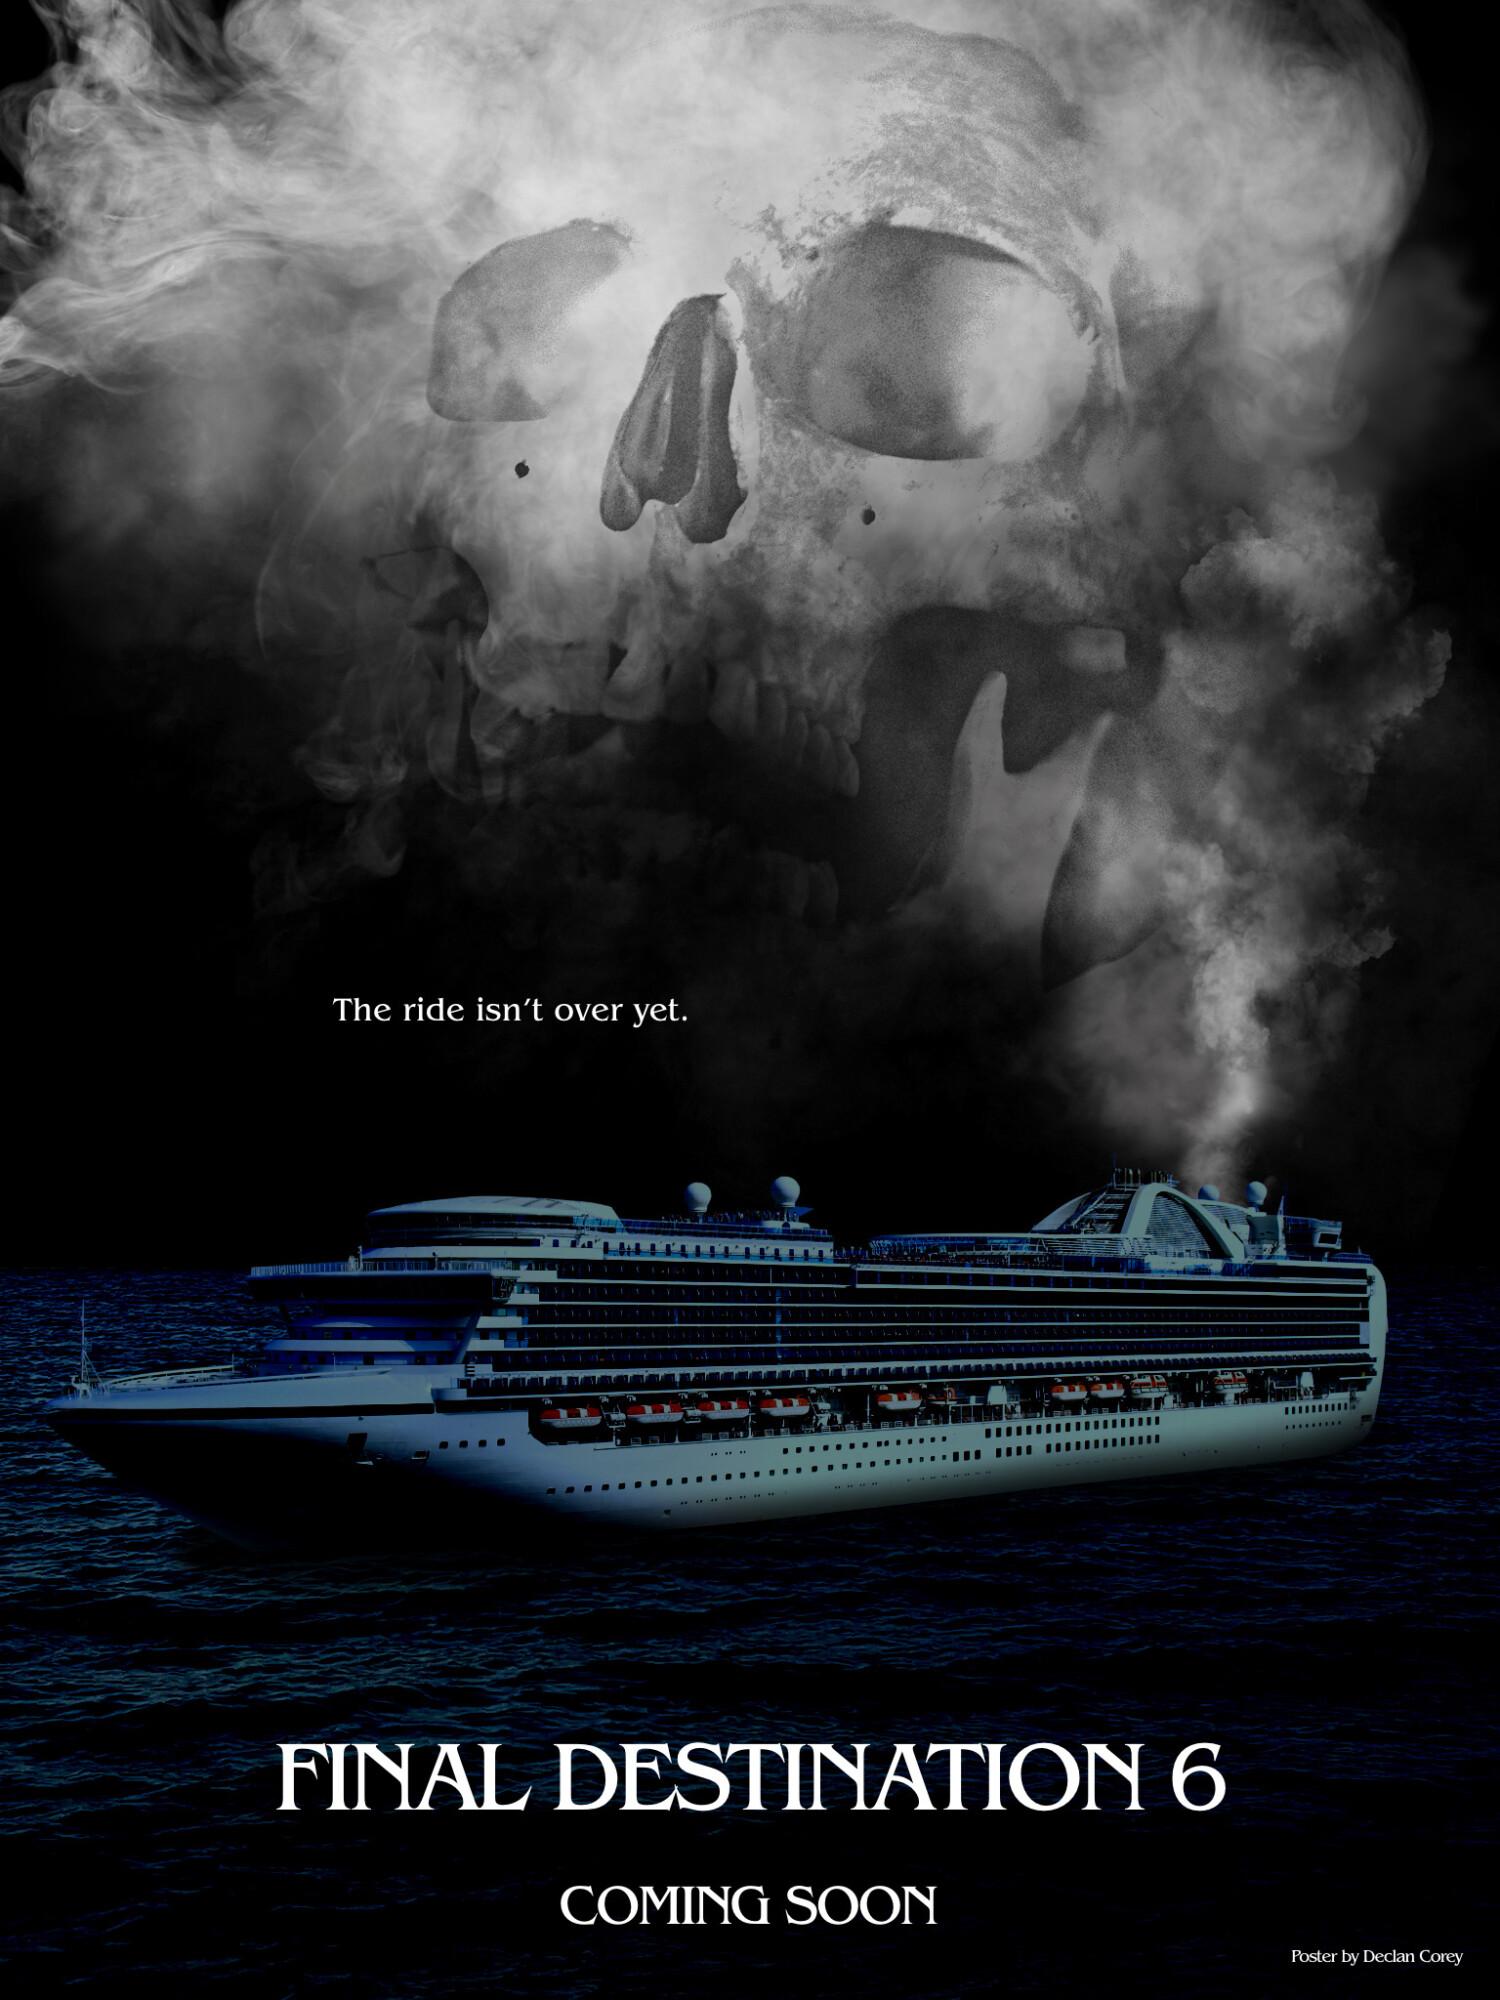 Final Destination 6 (TBA) Concept Teaser Poster DCA Poster Art